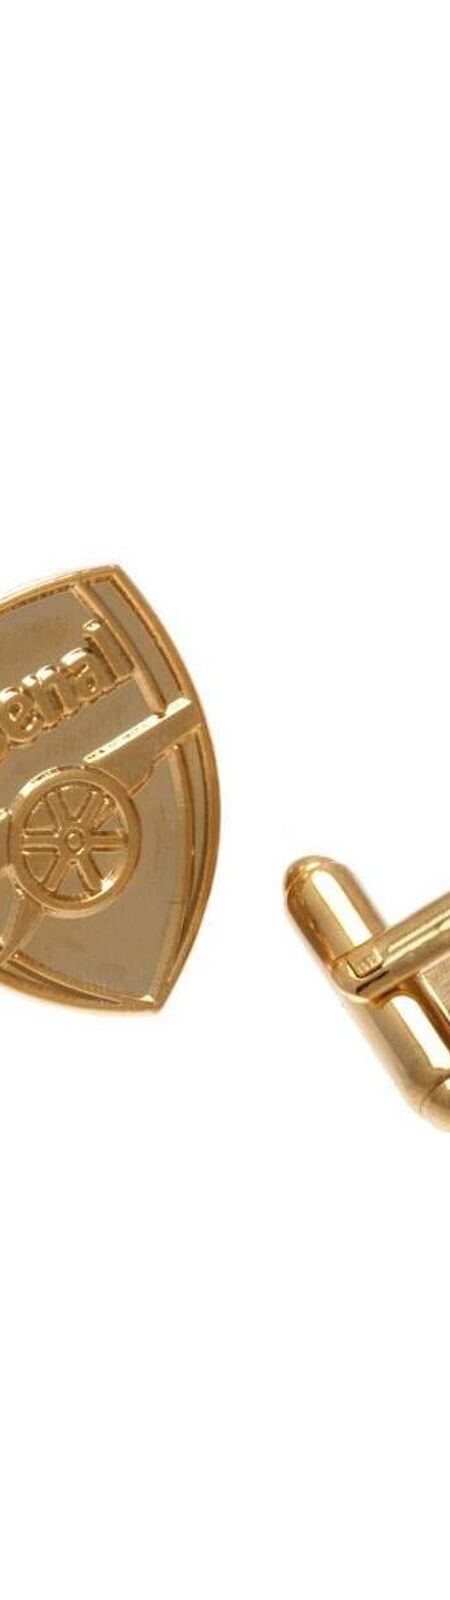 Arsenal FC - Boutons de manchette GOLD PLATED (Doré) (Taille unique) - UTTA2470